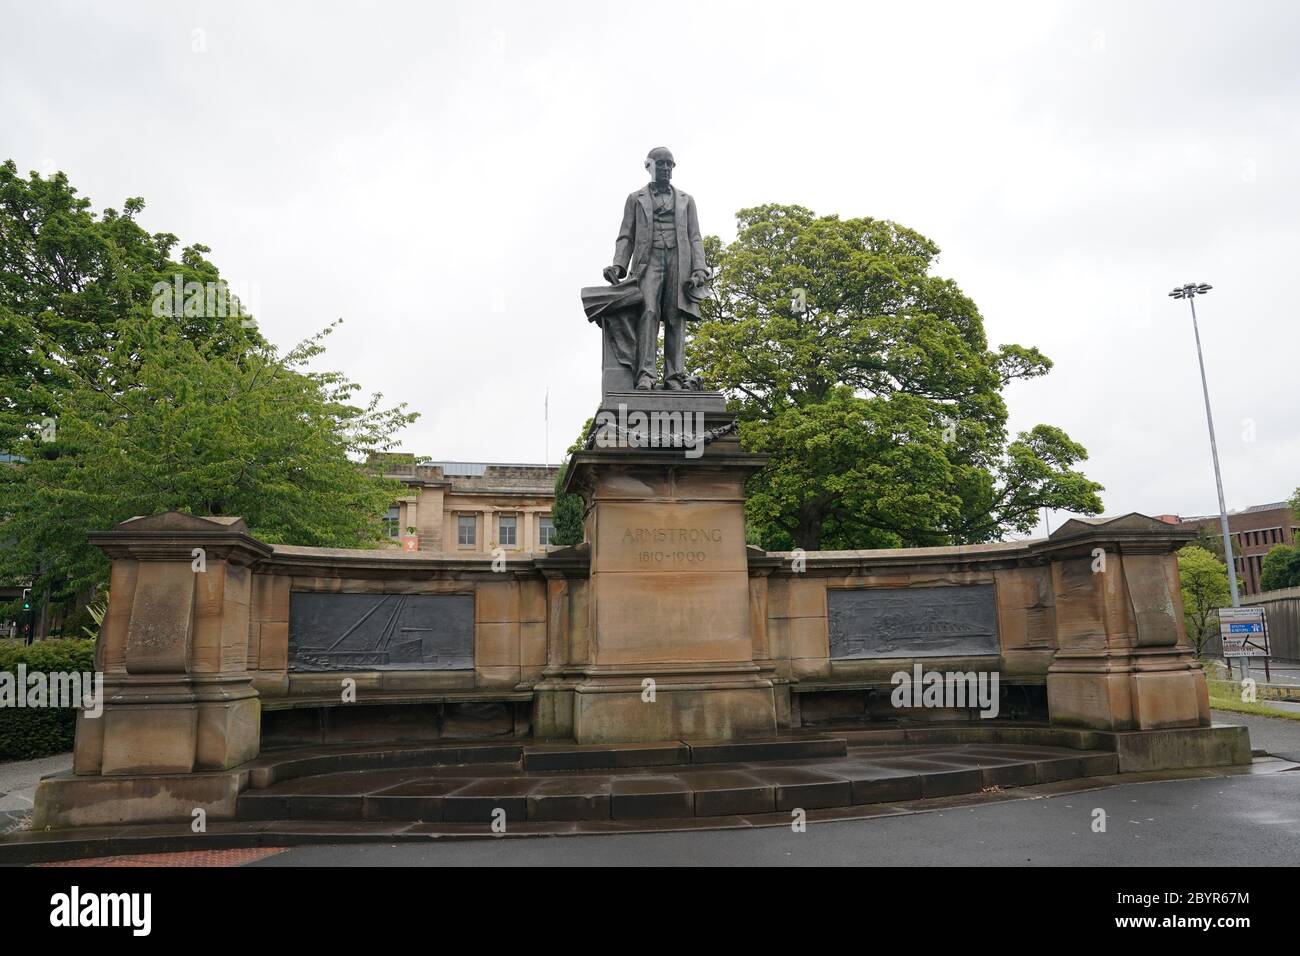 L'Armstrong Memorial si trova appena fuori dal campus della Newcastle University, che gli attivisti chiedono di essere rimossi. L'inventore e filantropo Lord William Armstrong è stato accusato di sostenere la supremazia bianca armando i Confederati, così come gli Unionisti. Foto Stock